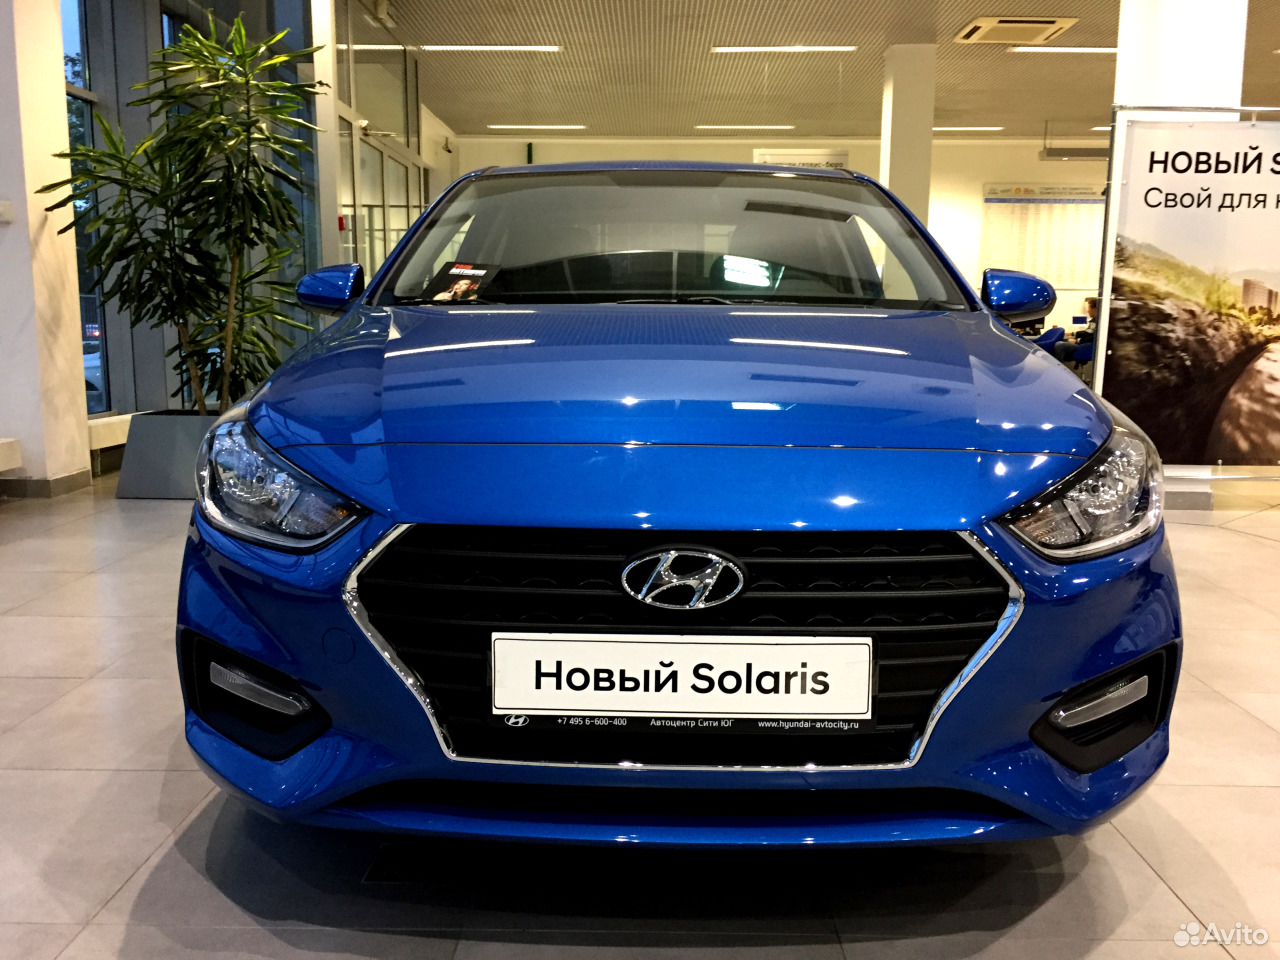 Hyundai Solaris 2017 новая